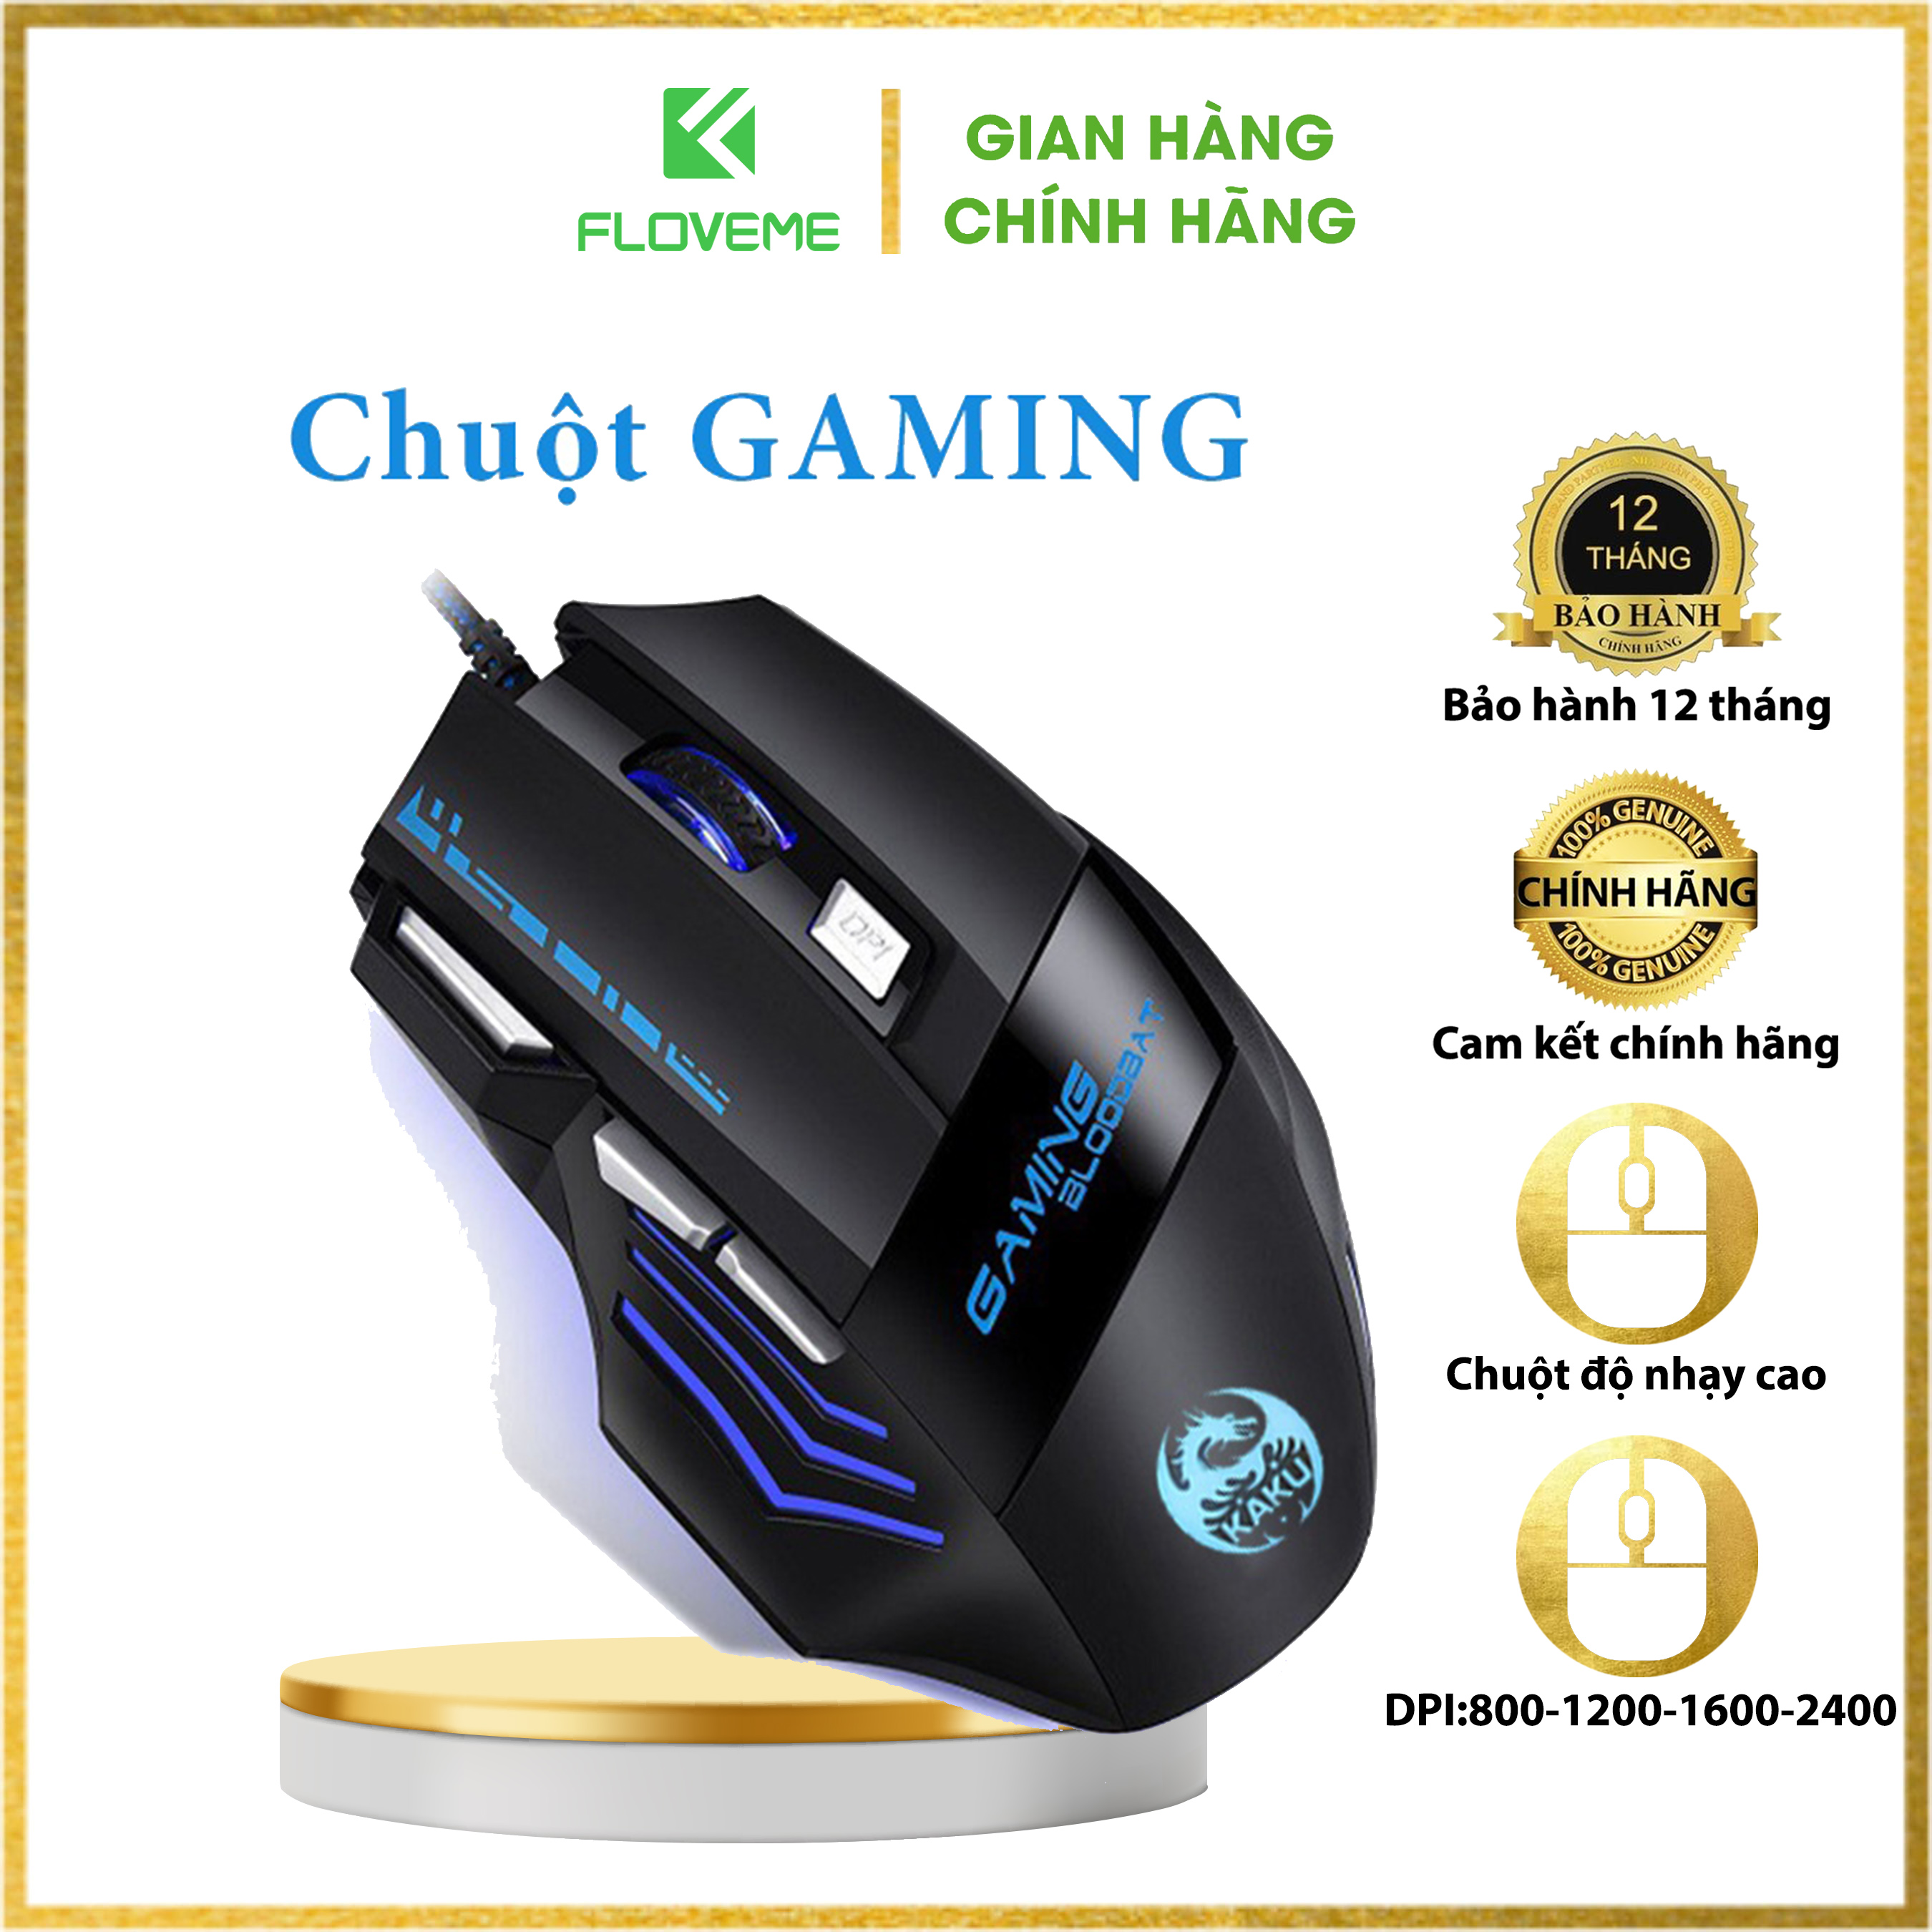 Chuột máy tính, Chuột Gaming có dây Floveme - KSC-568 Chơi game máy tính và điện thoại 7 nút, LED RGB Full màu - Hàng chính hãng